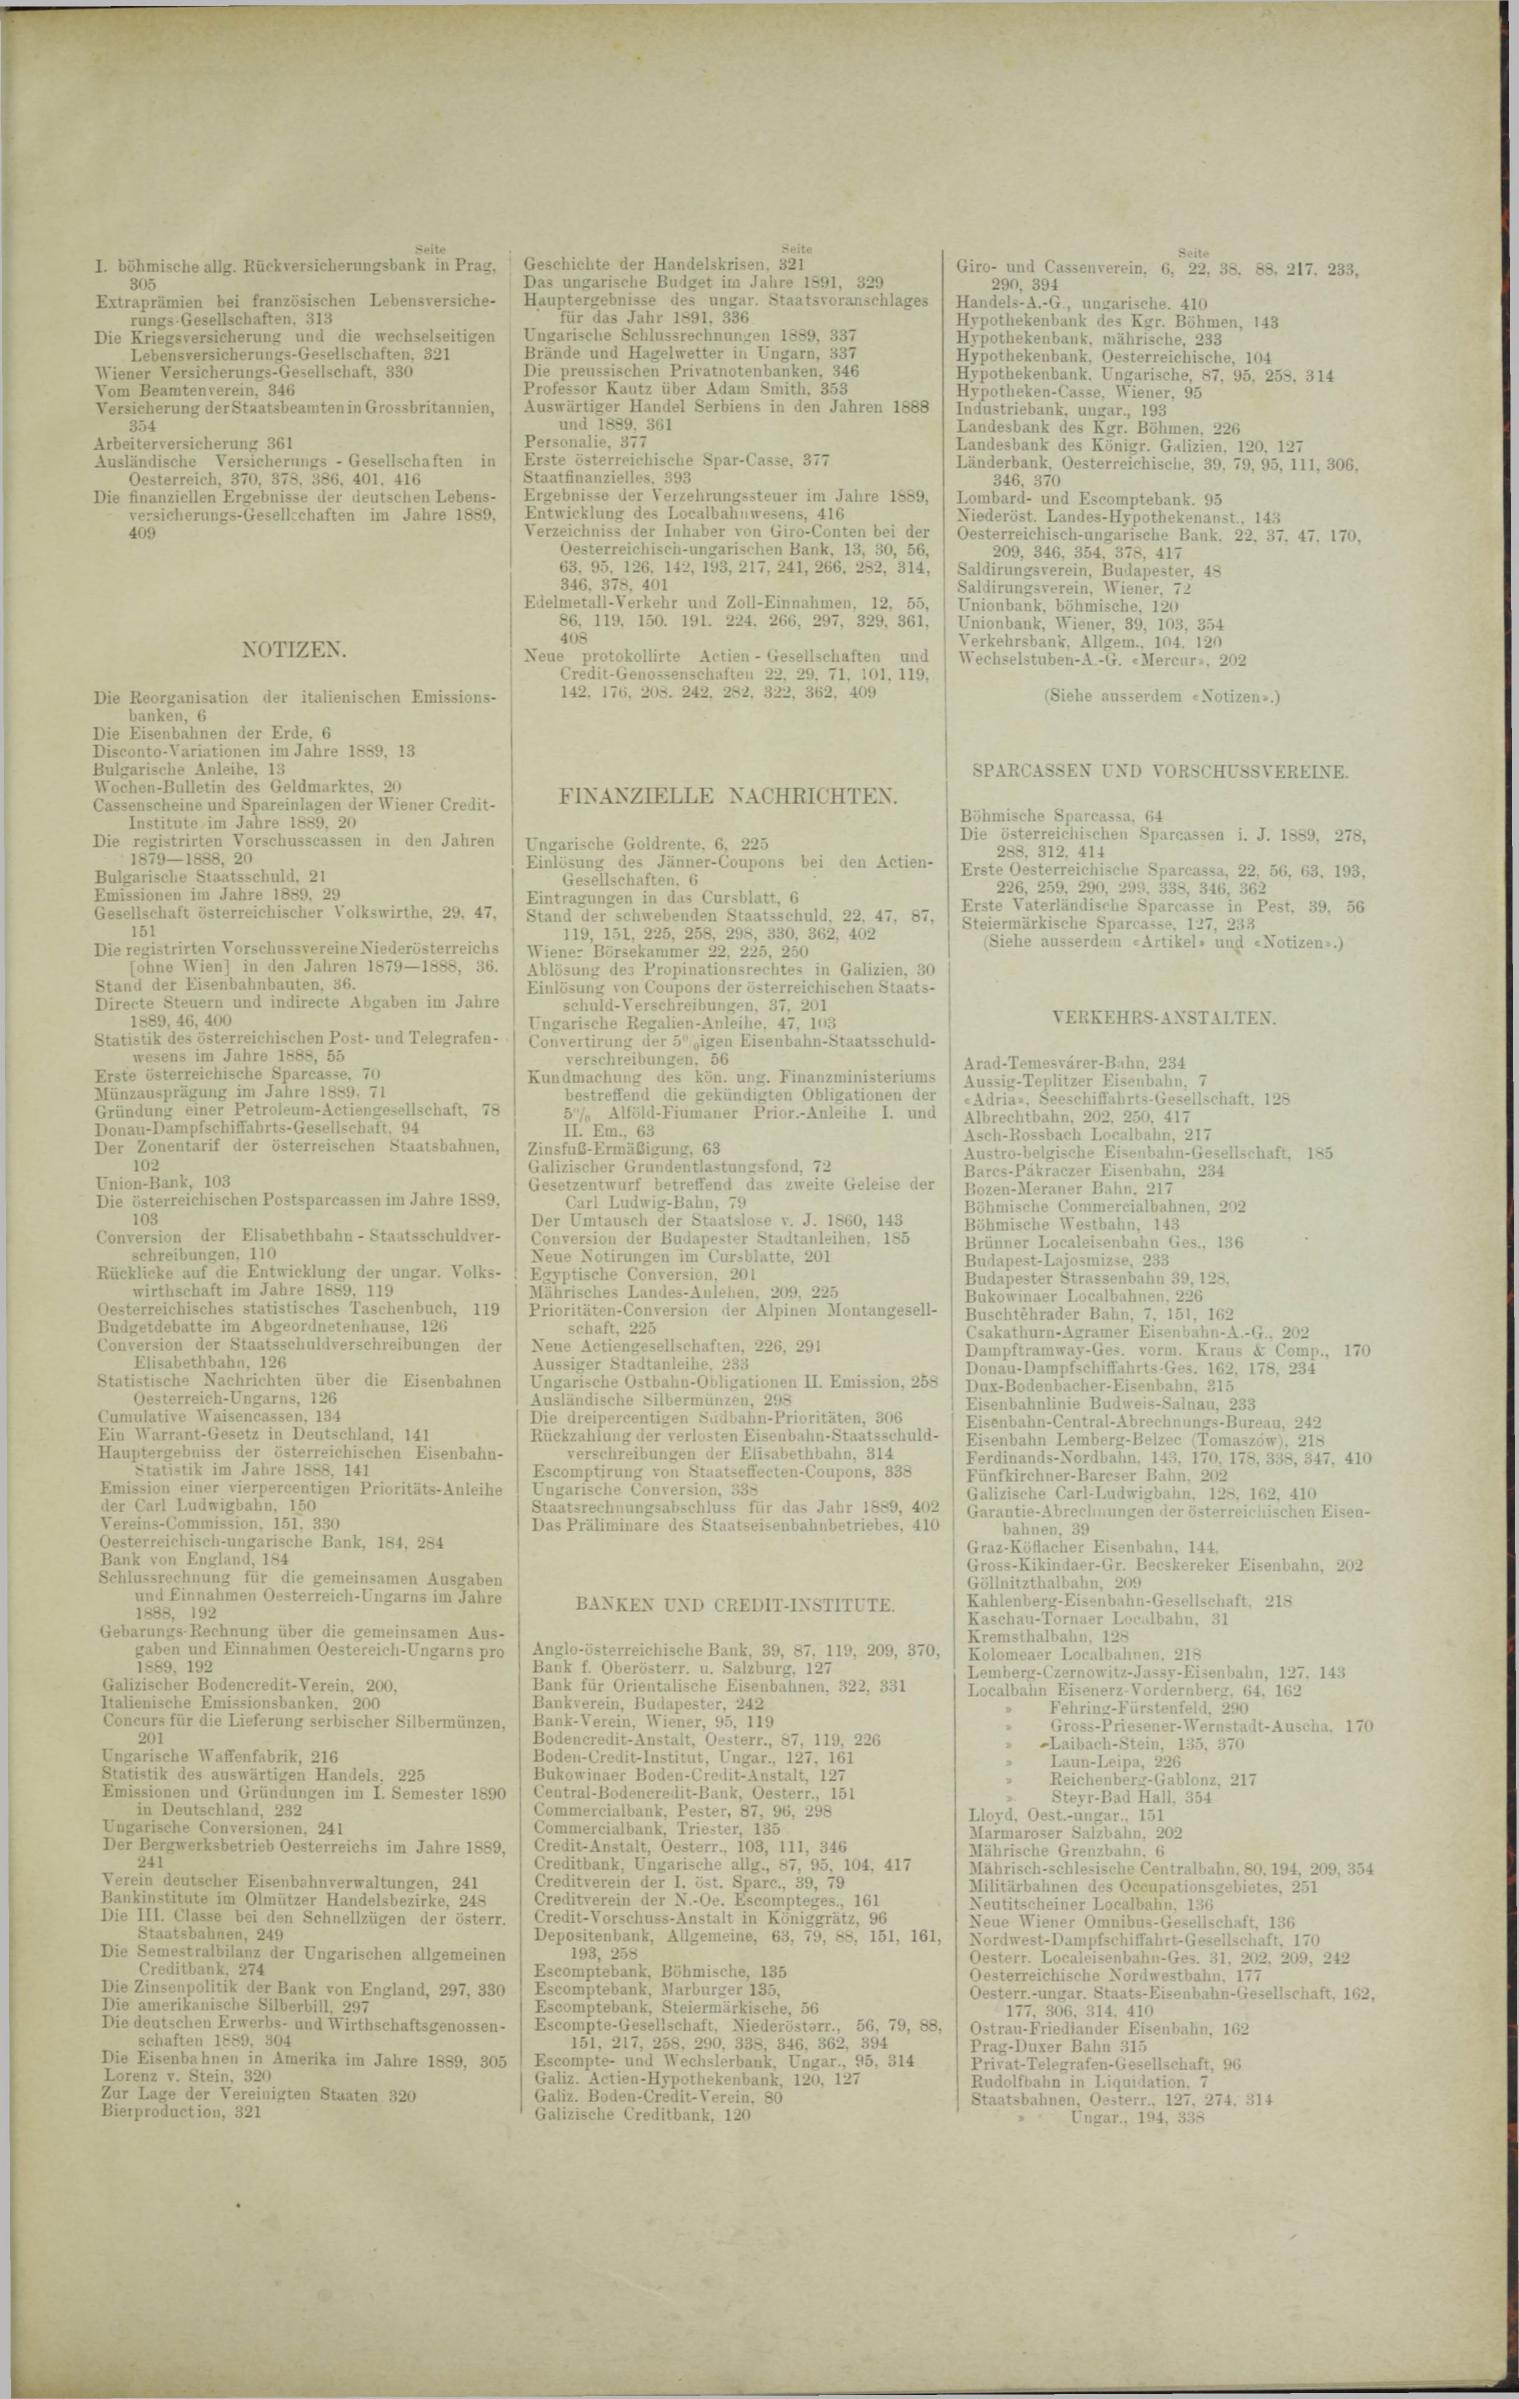 Der Tresor 03.04.1890 - Seite 11